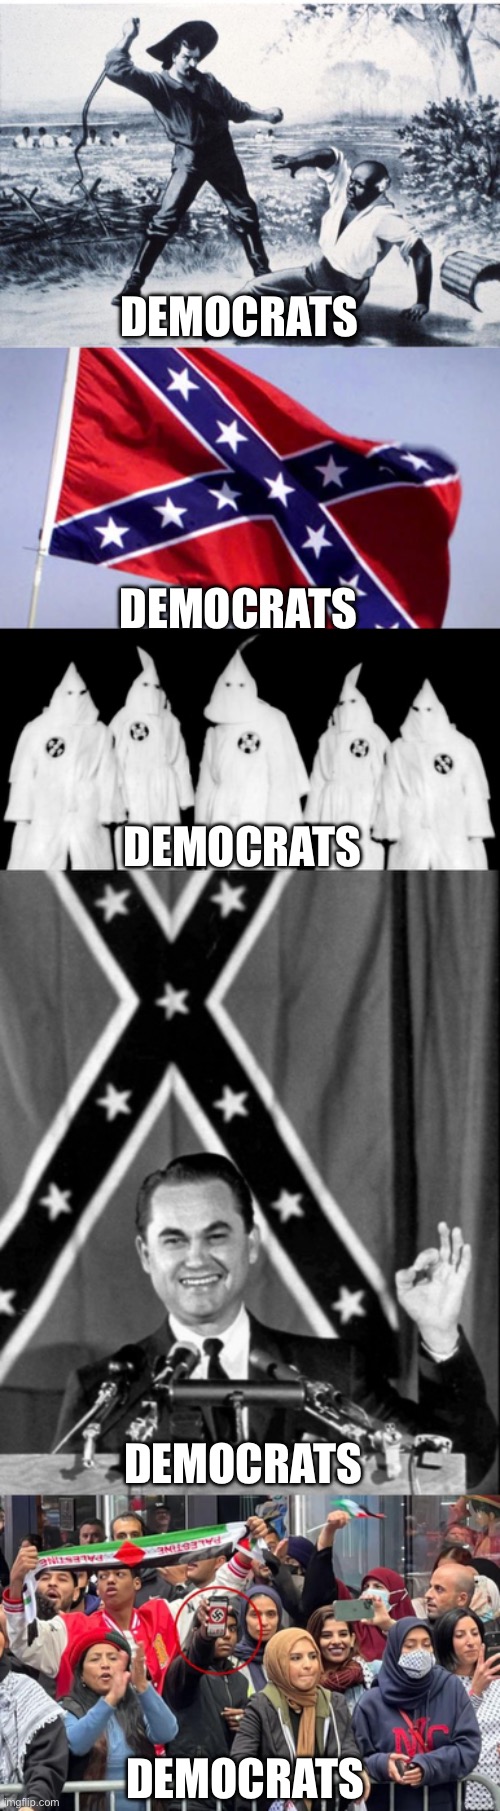 one and all | DEMOCRATS; DEMOCRATS; DEMOCRATS; DEMOCRATS; DEMOCRATS | image tagged in democrats | made w/ Imgflip meme maker